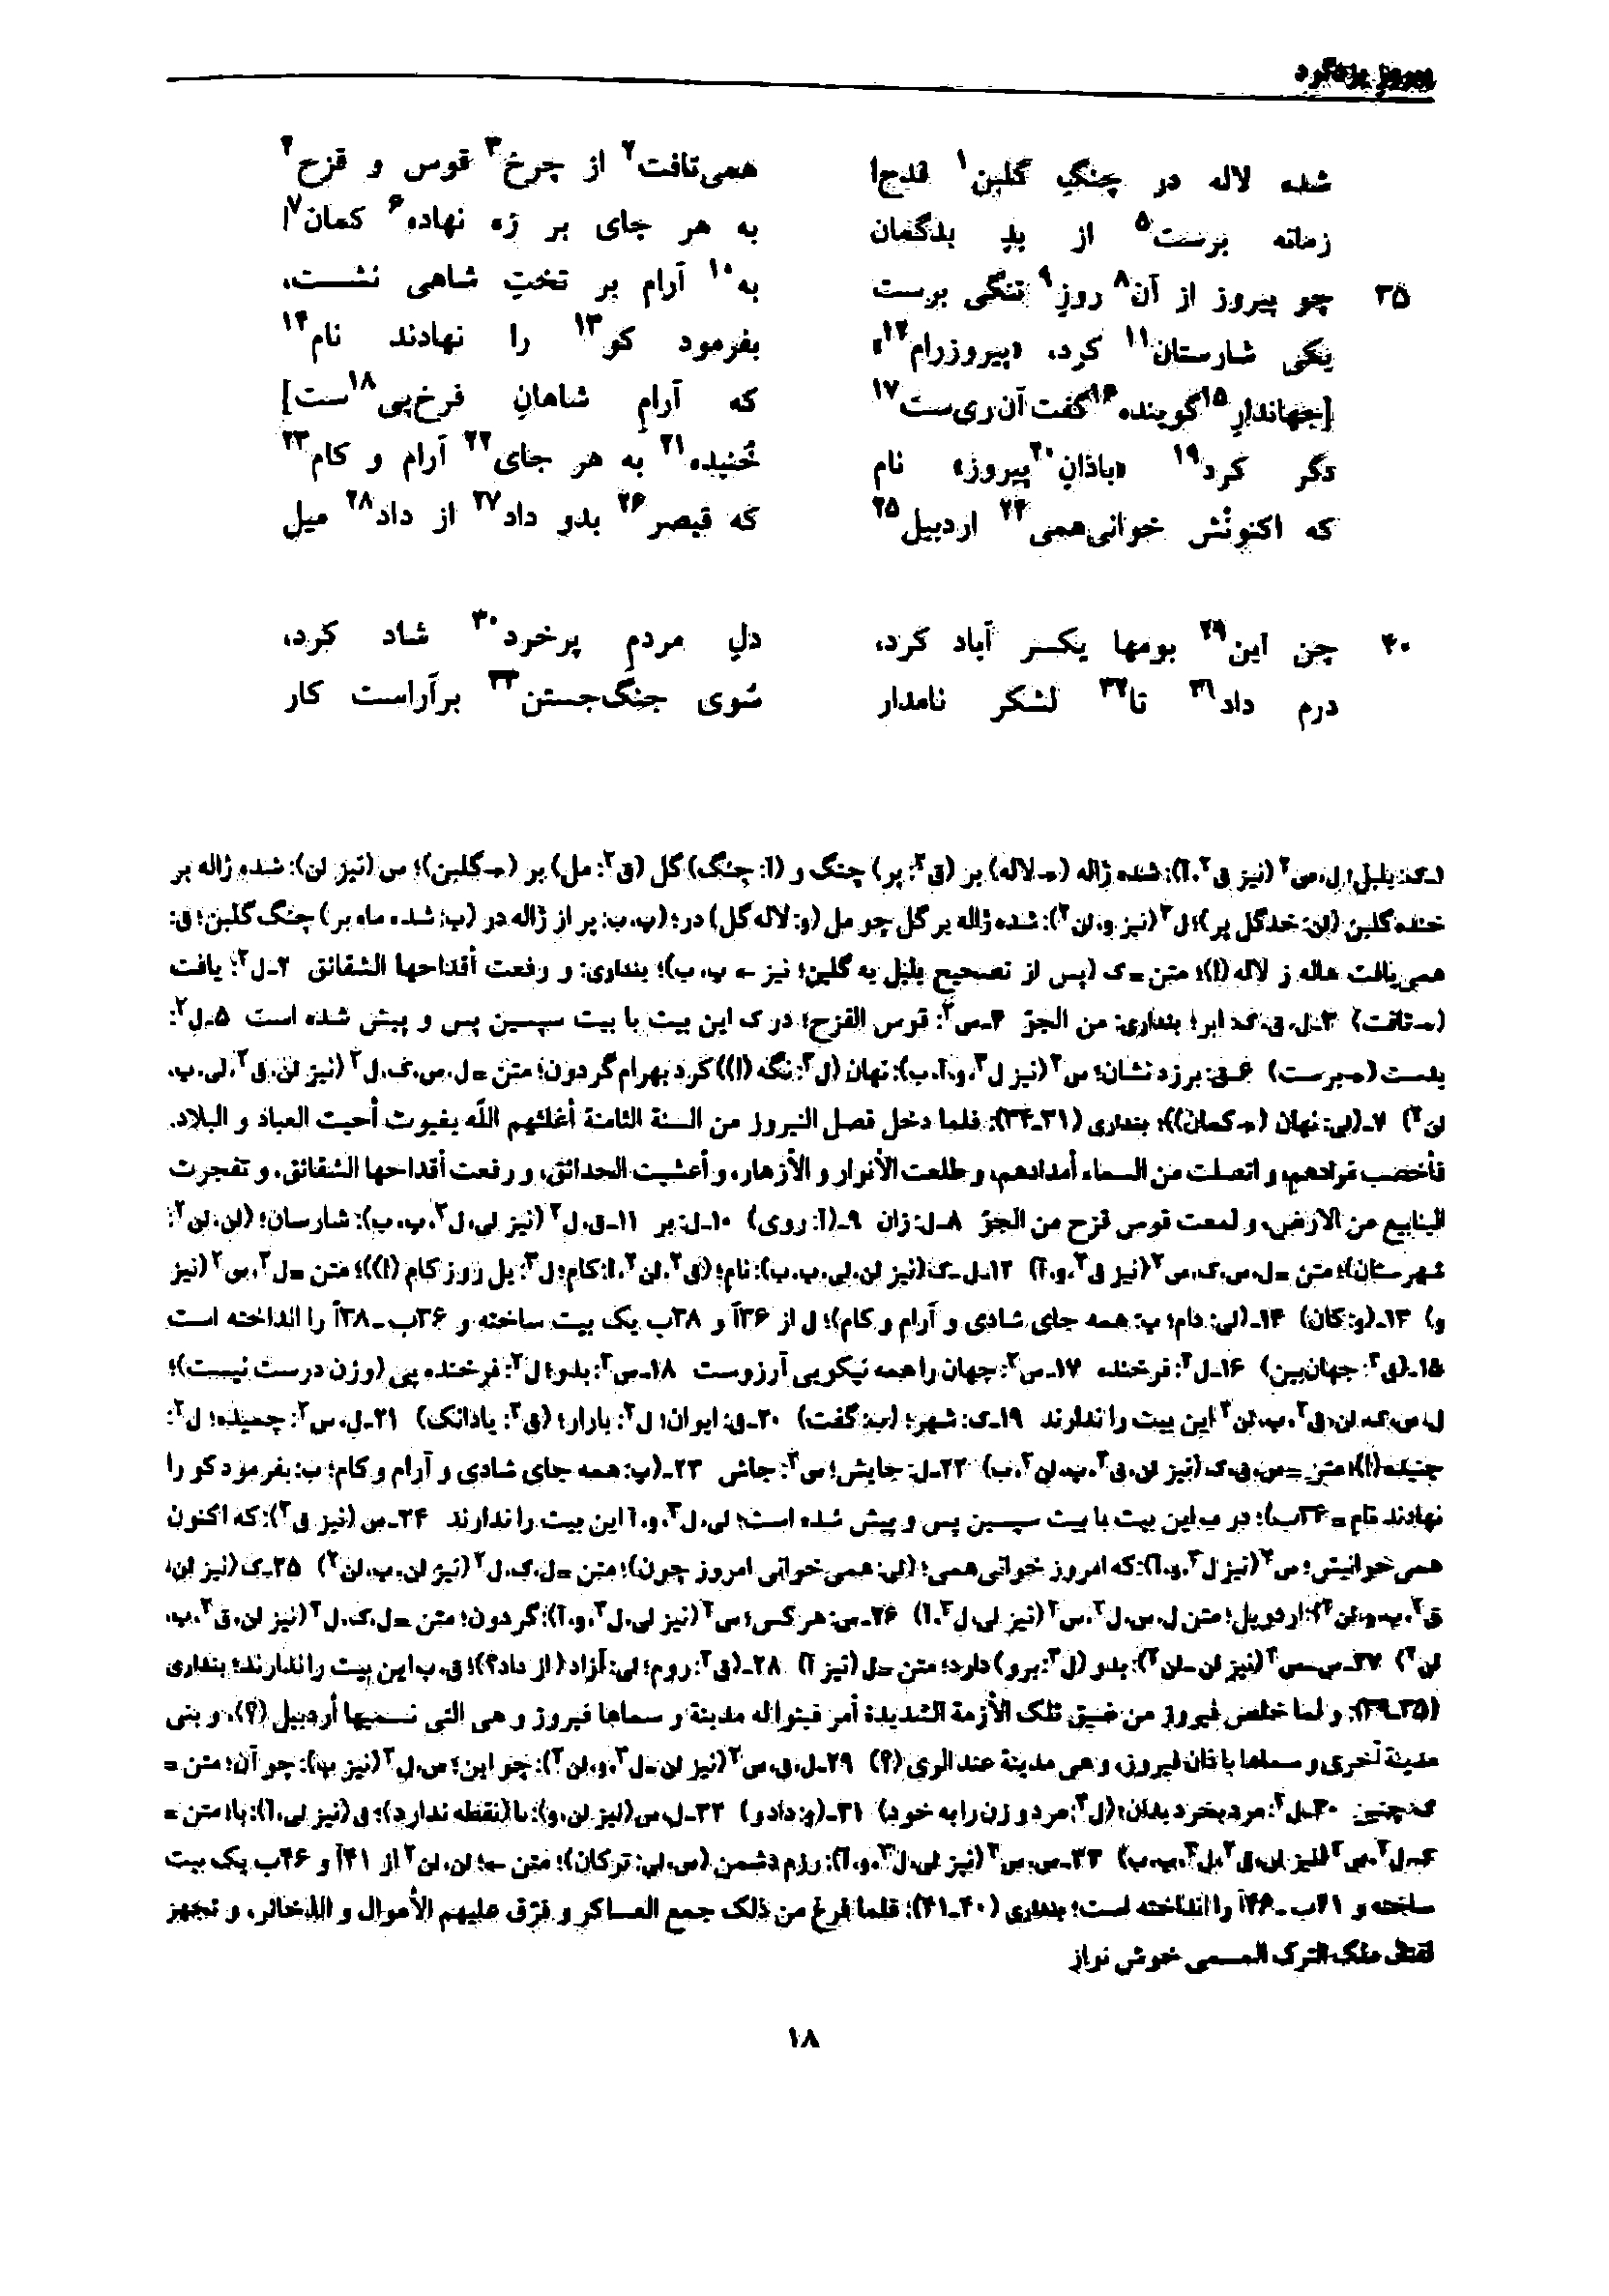 vol. 7, p. 18